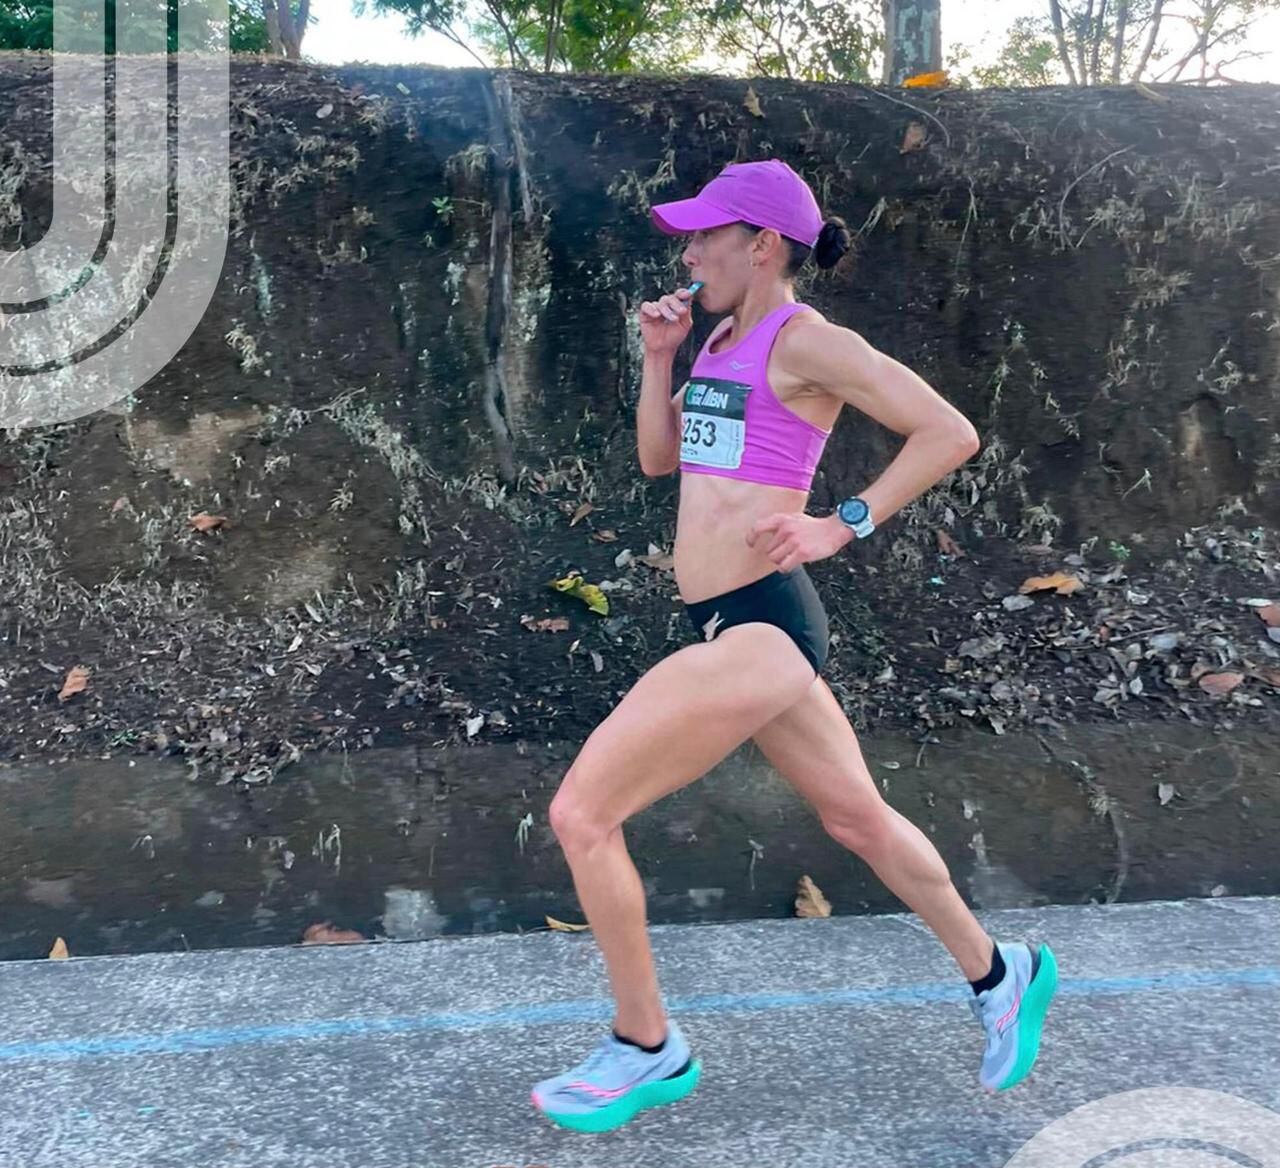 La atleta mexicana Argentina Valdepeñas Cerna ganó por segundo año consecutivo la Maratón San José. Tomada: Facebook Runners